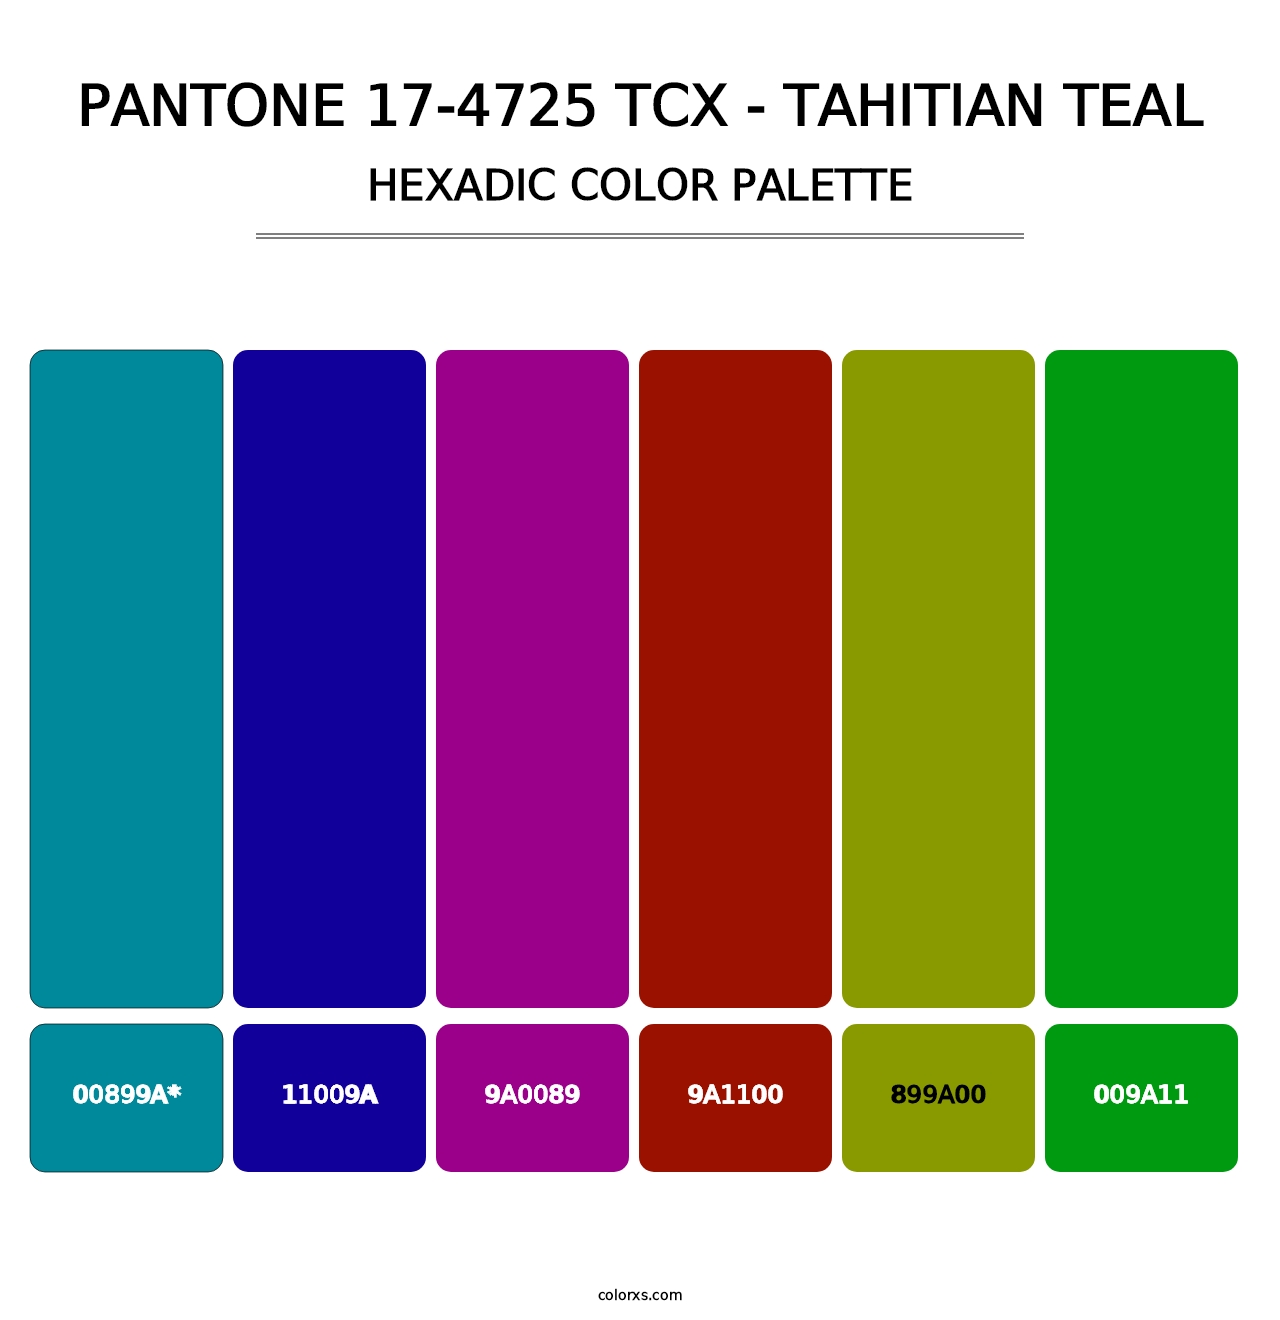 PANTONE 17-4725 TCX - Tahitian Teal - Hexadic Color Palette